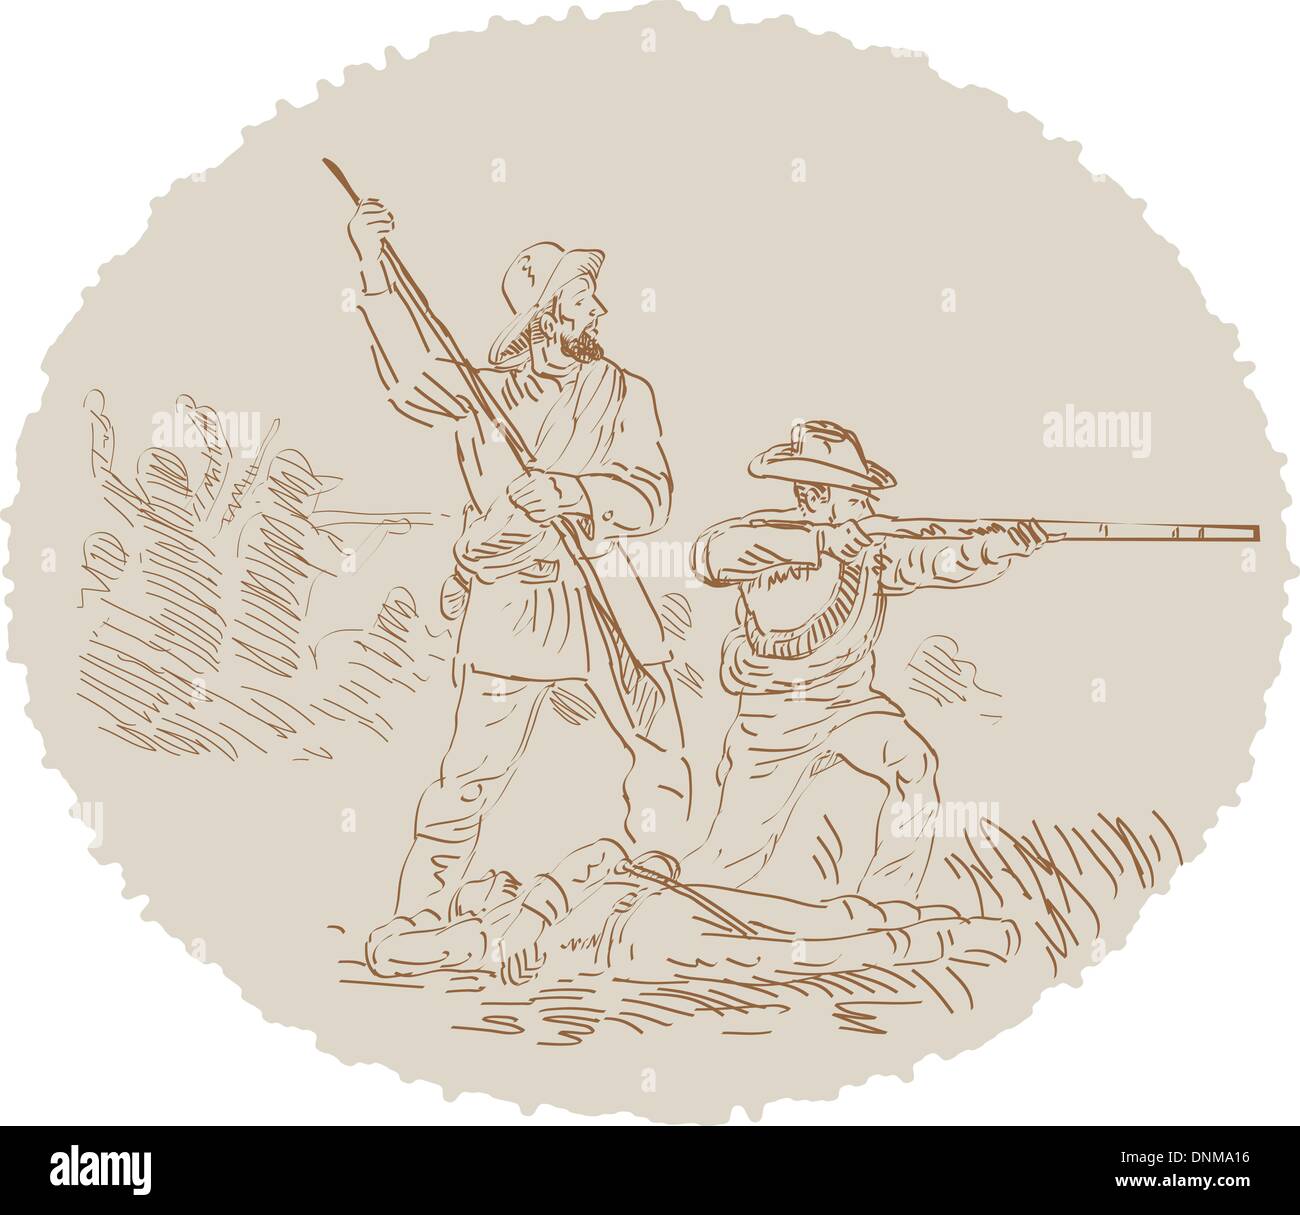 Abbildung eines amerikanischen Bürgerkrieg konföderierten Soldaten kämpfen gezeichnet und skizziert. Stock Vektor